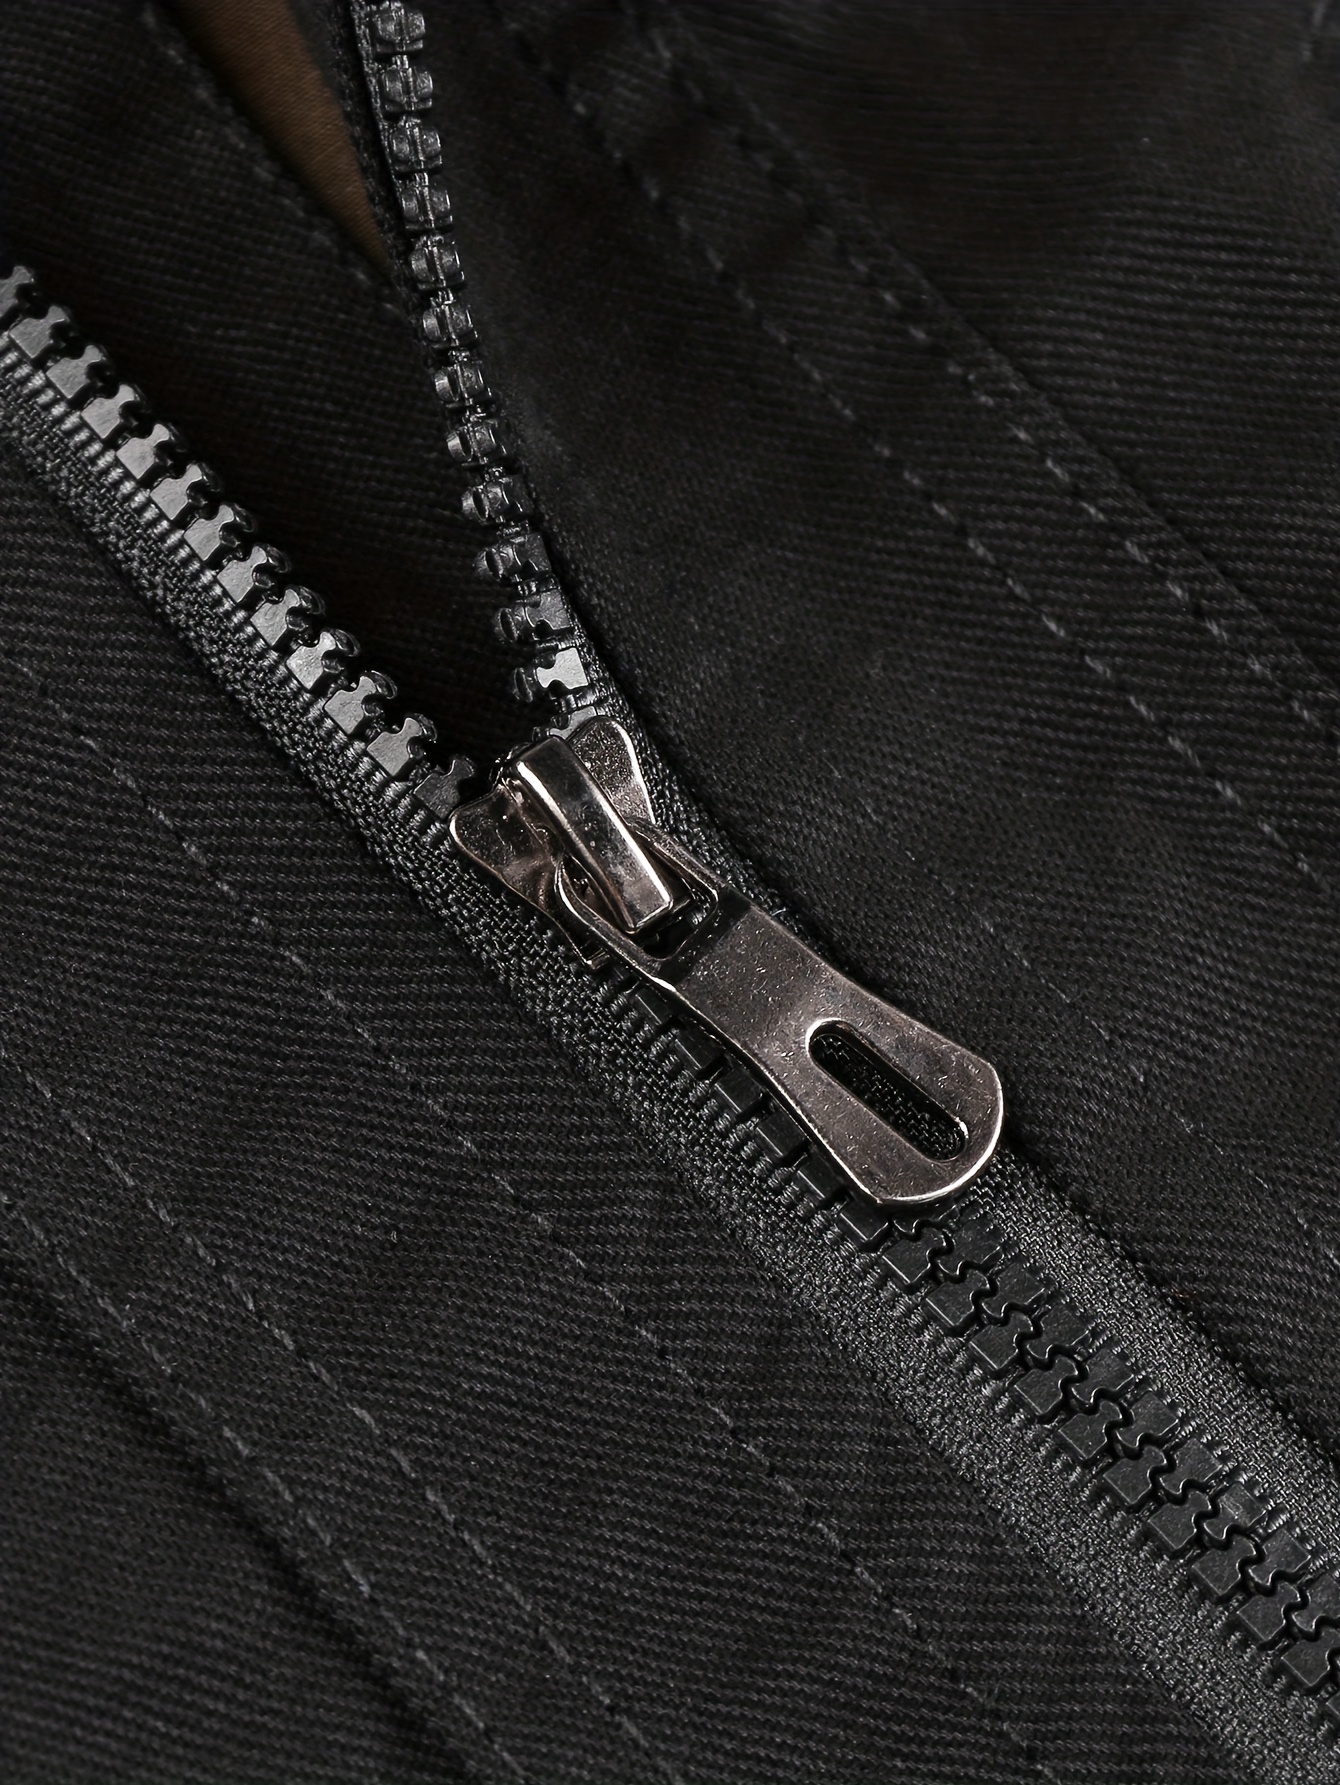 Multi Pocket Utility Leather Jacket - Black